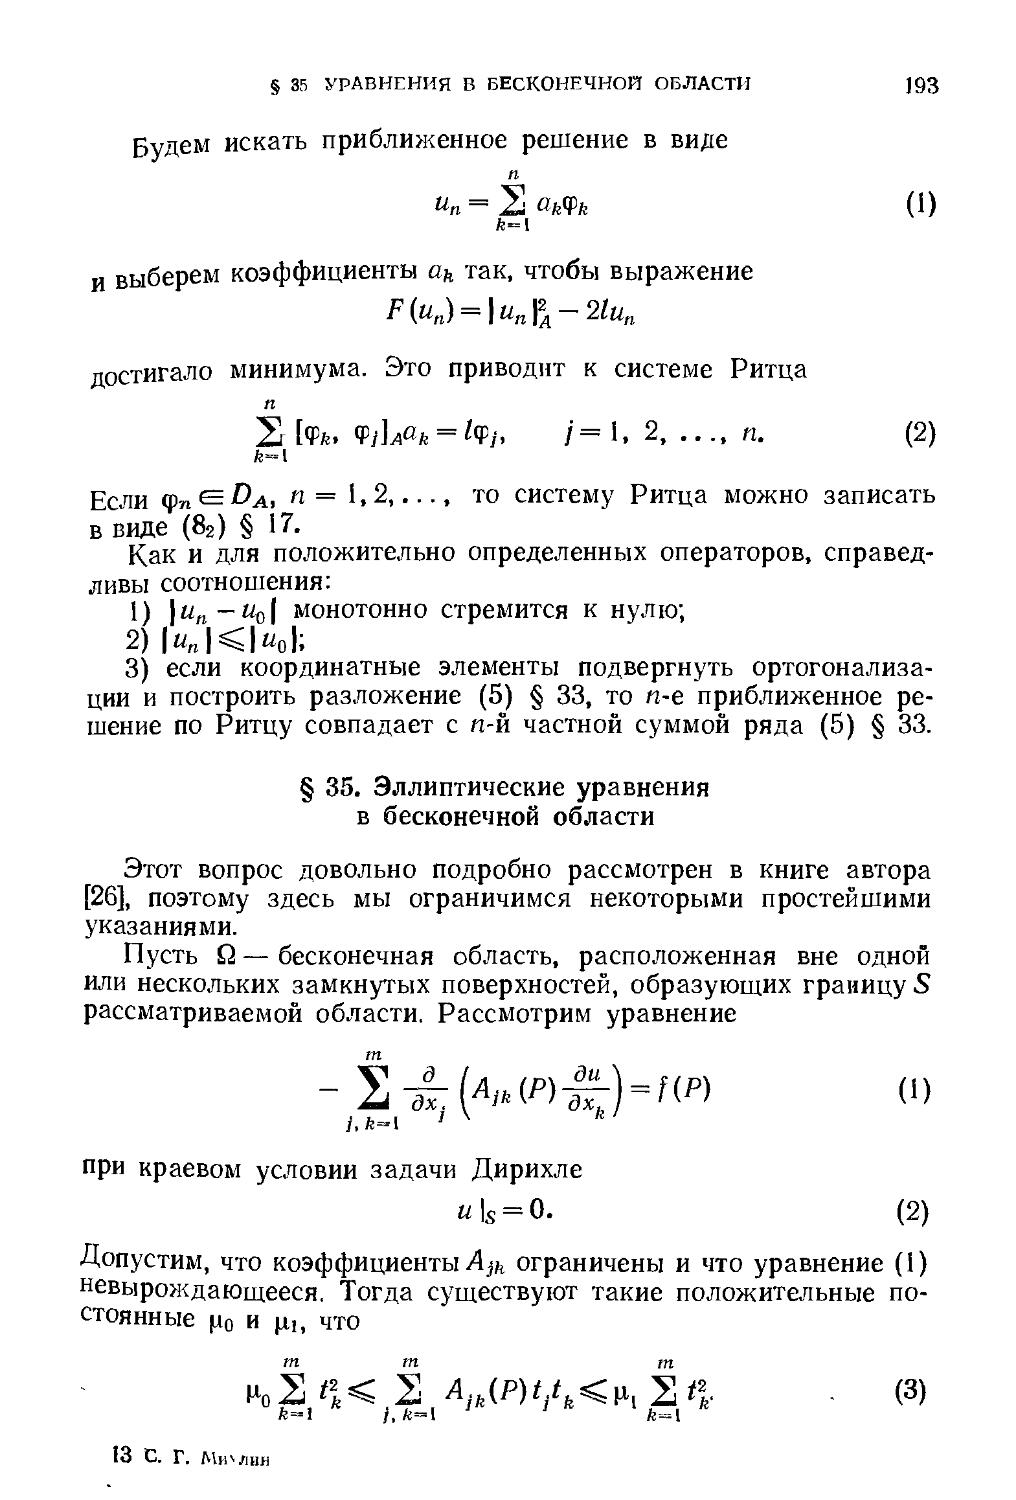 § 35. Эллиптические уравнения в бесконечной области